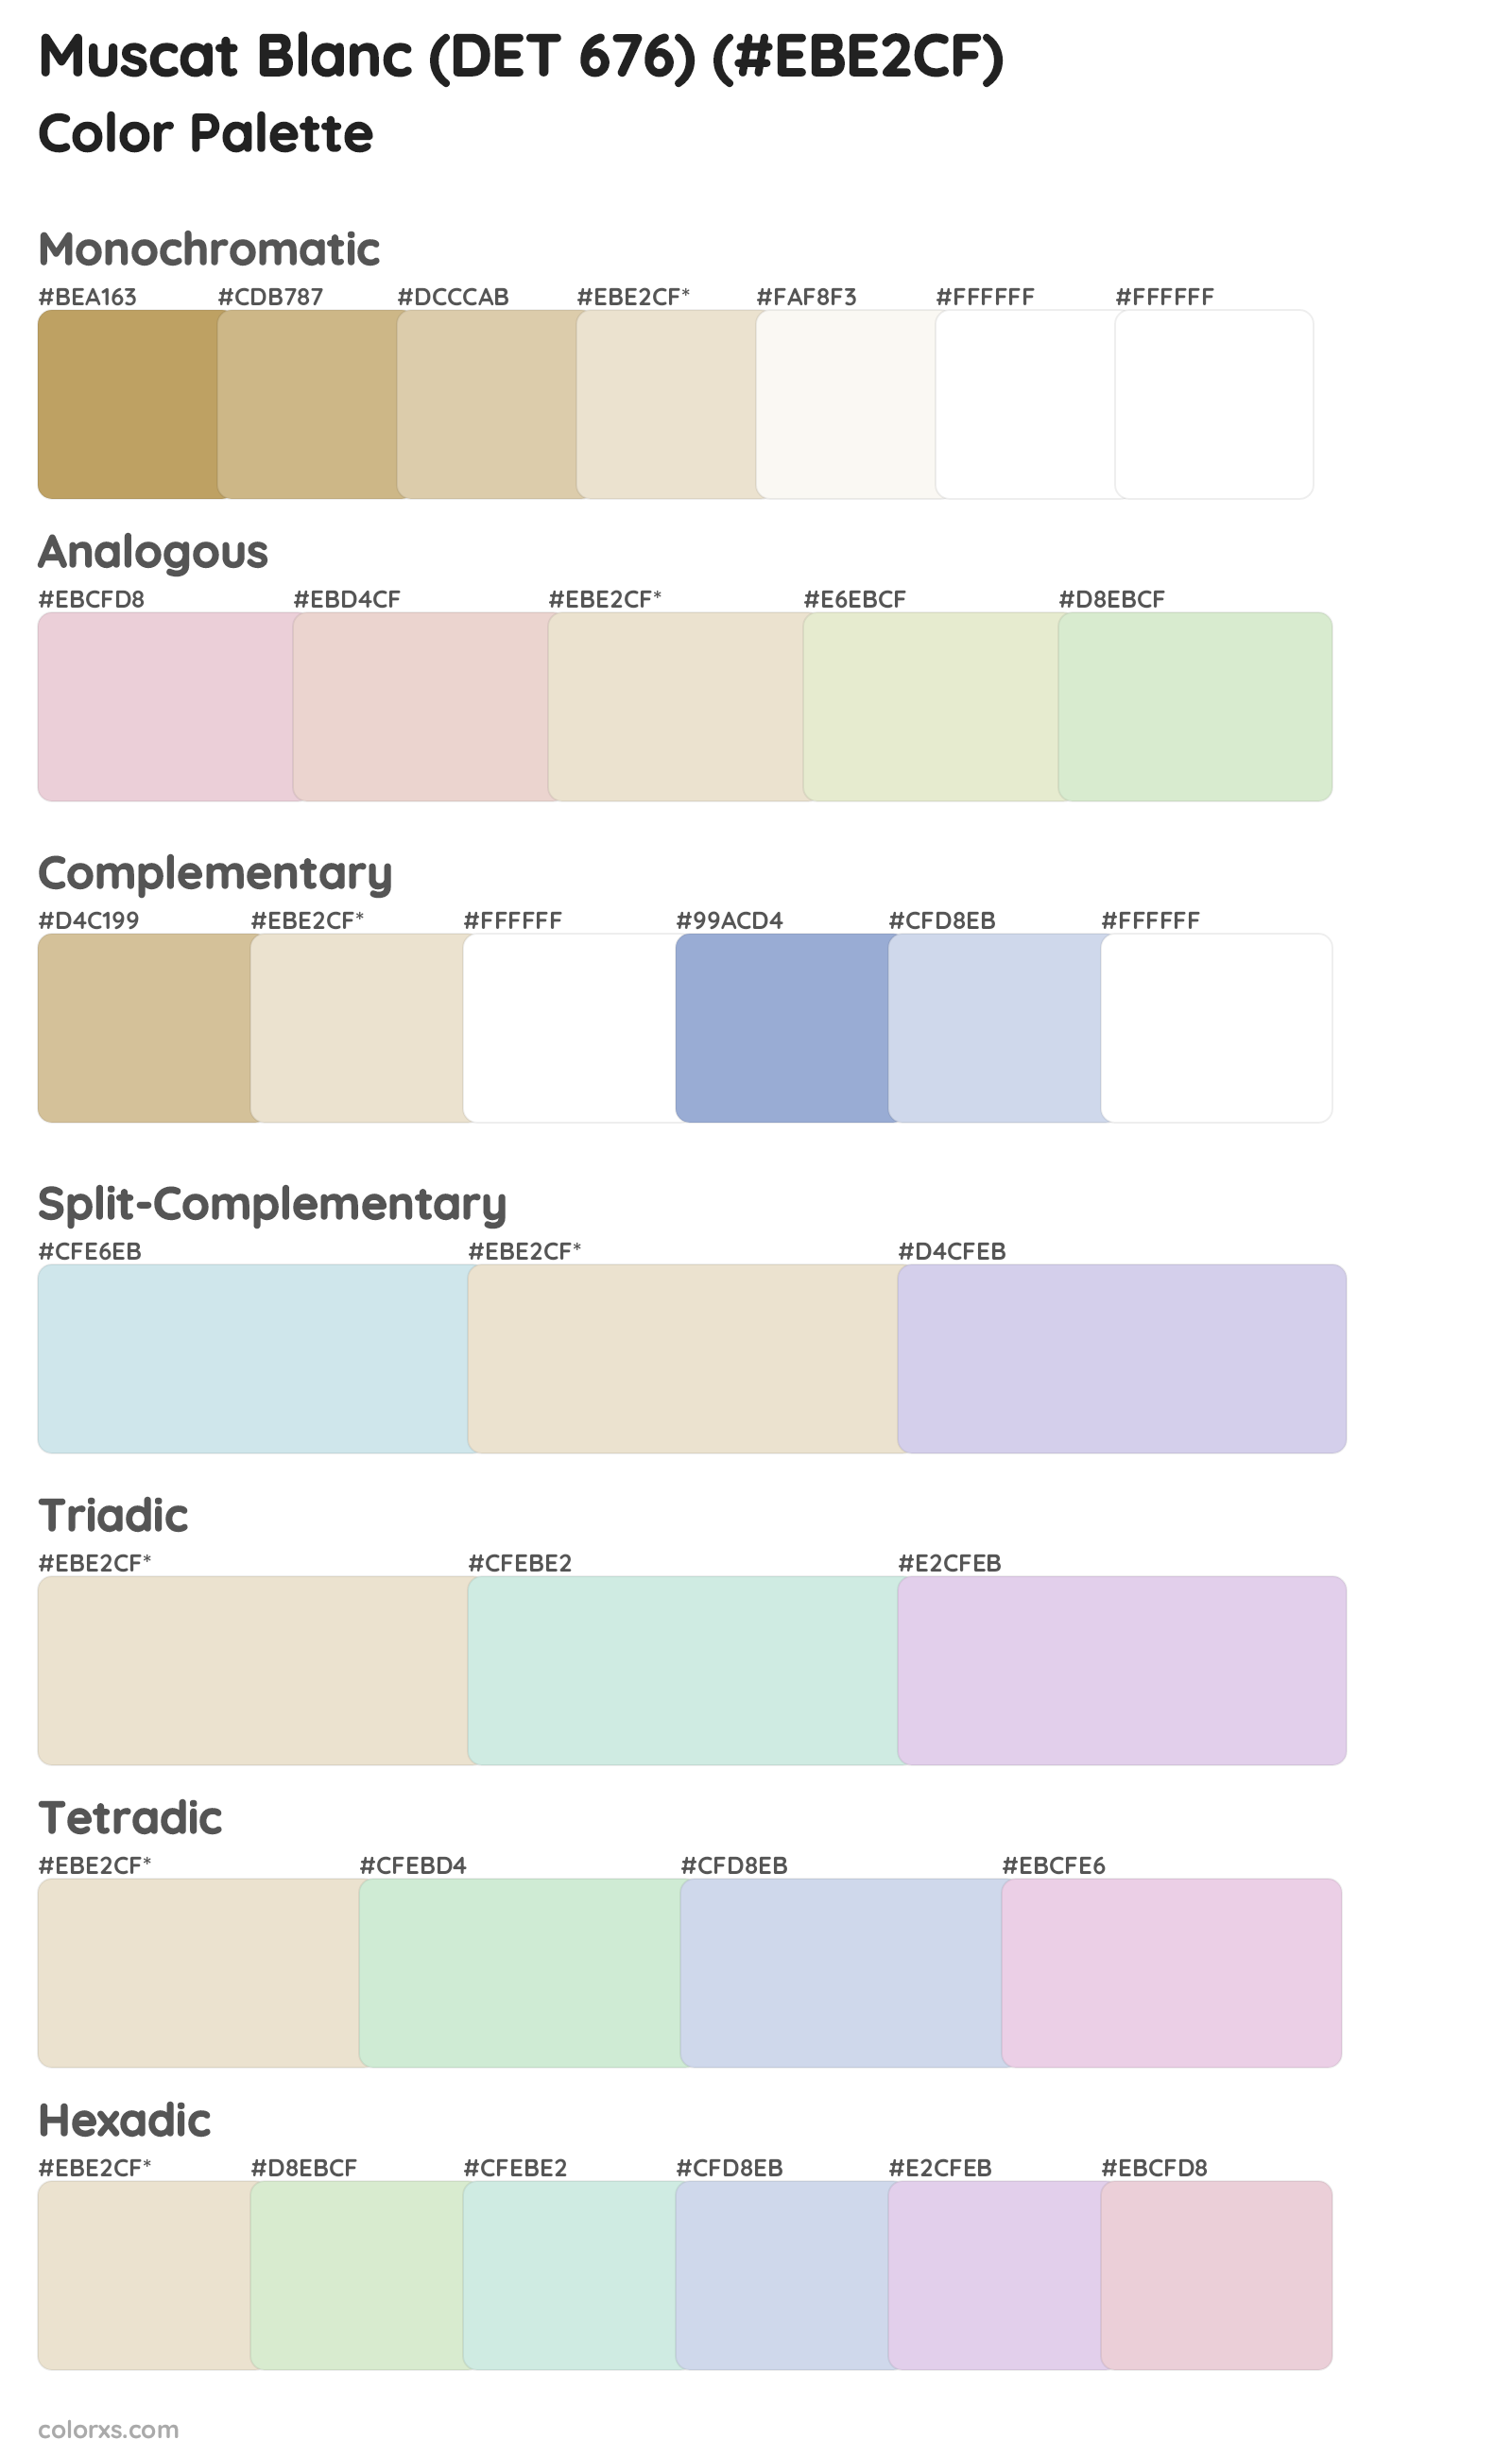 Muscat Blanc (DET 676) Color Scheme Palettes